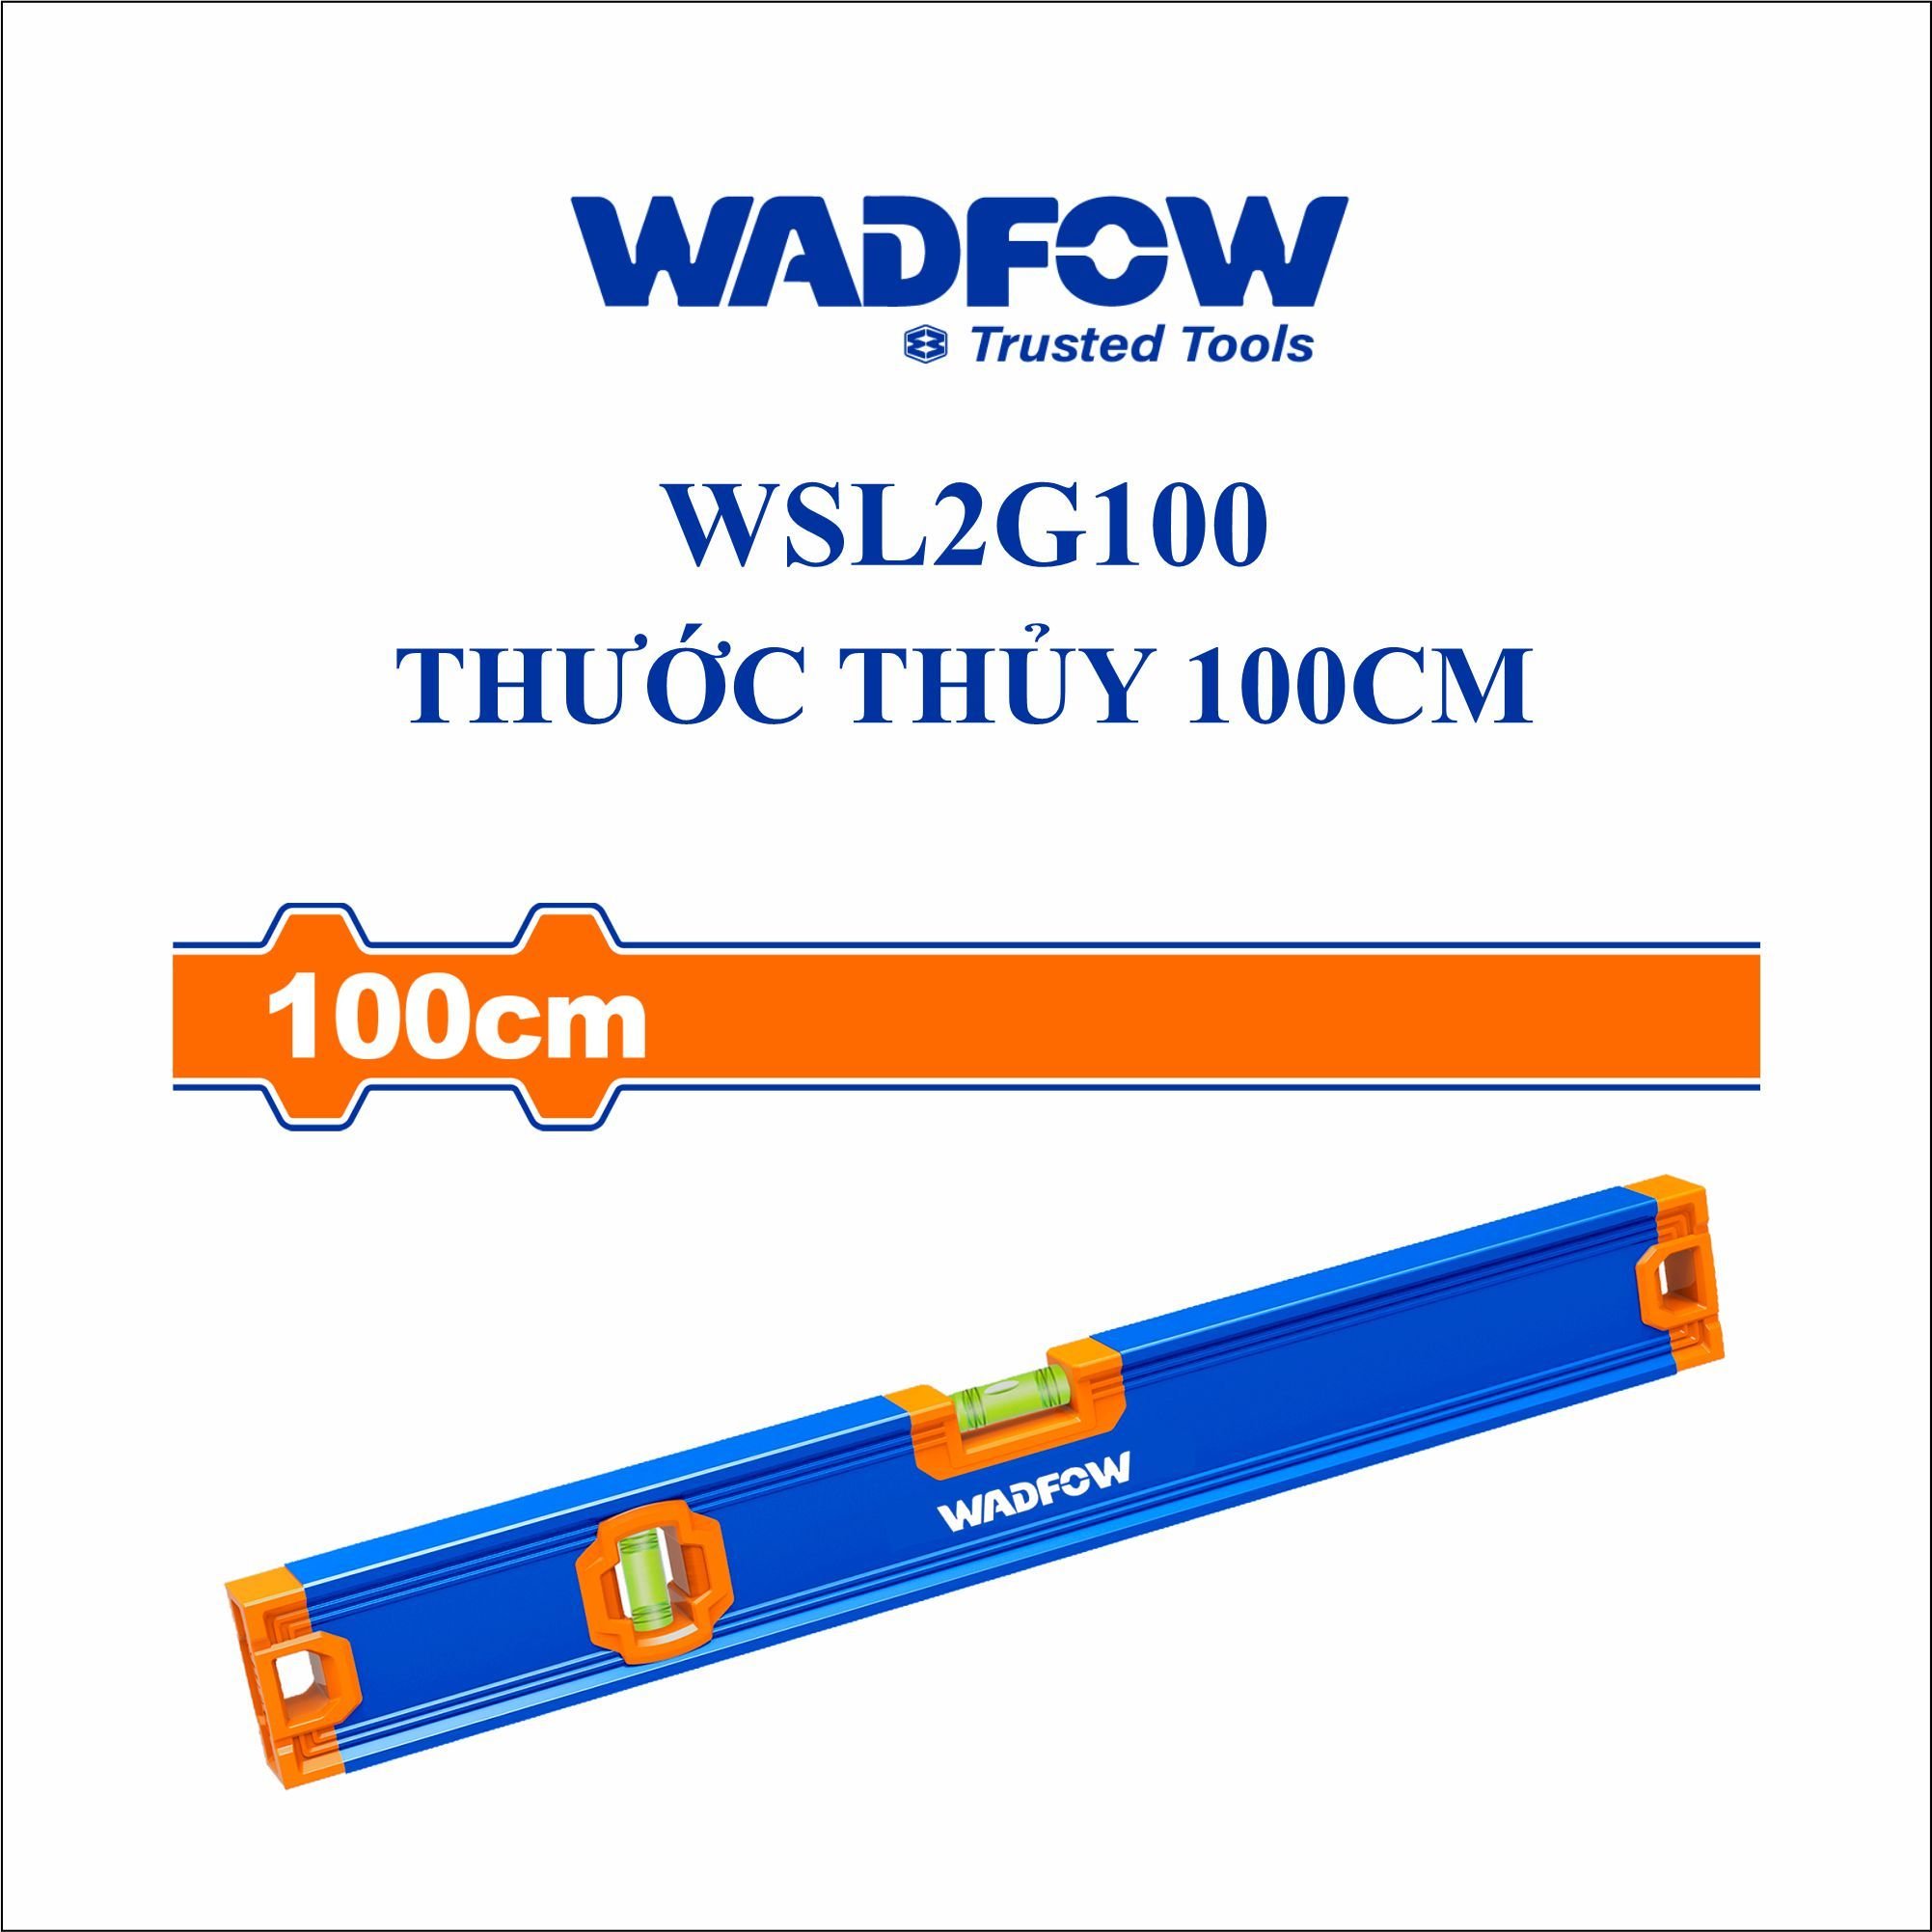  Thước thủy 100cm WADFOW WSL2G100 